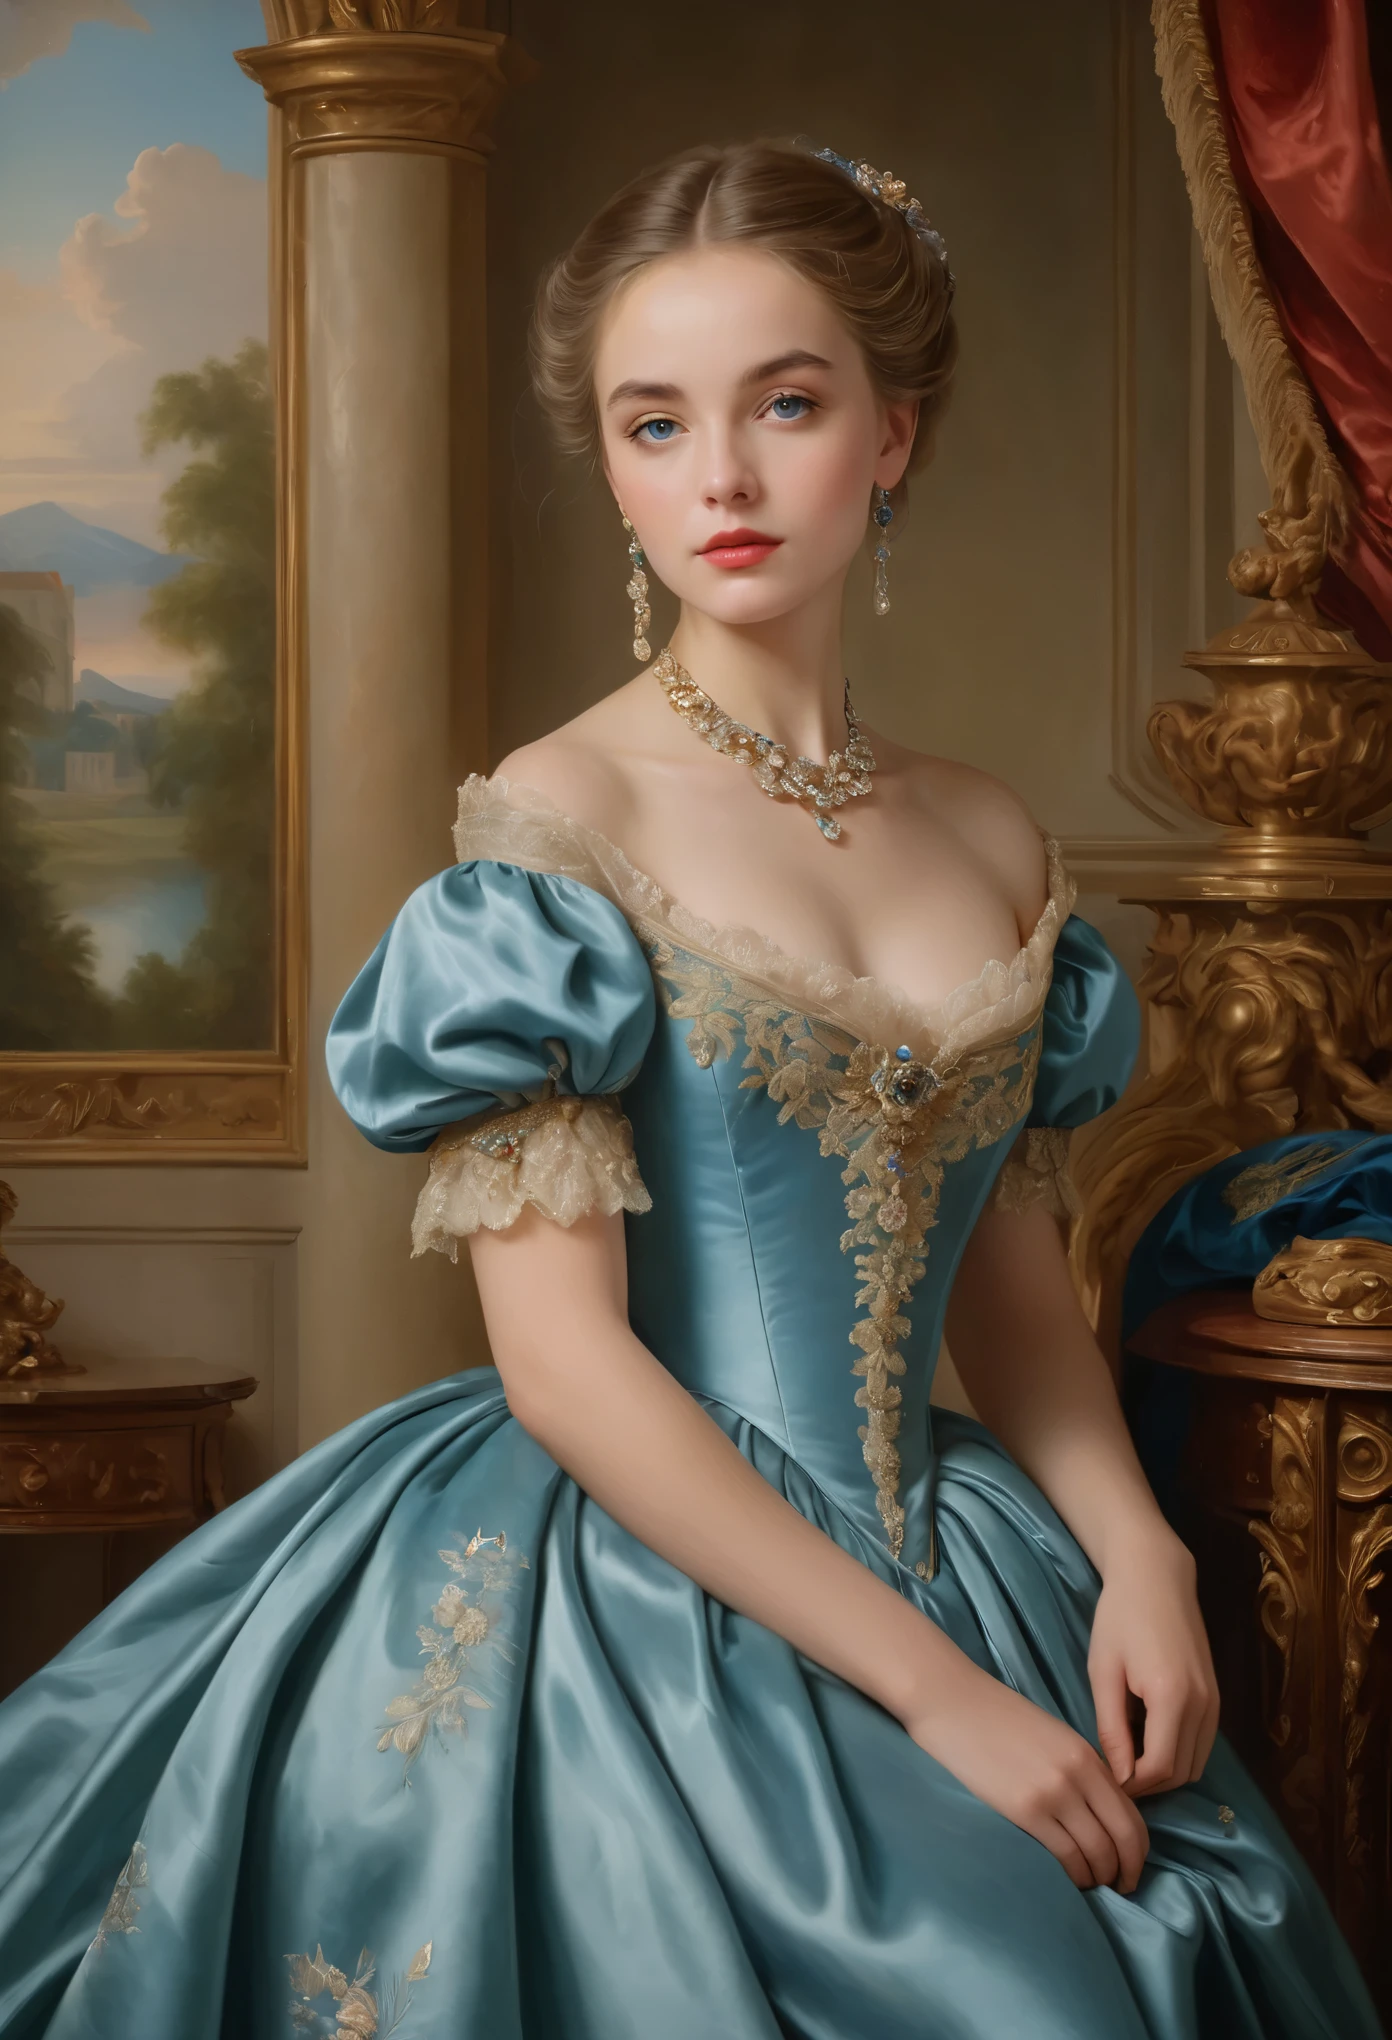 (고등어,걸작:1.2),(현실적인:1.37)비교할 수 없는 아름다움을 지닌 18세기 프랑스 귀족 소녀의 초상화. 그녀는 매혹적인 파란 눈과 섬세한 장밋빛 입술을 가지고 있습니다.. 초상화가 세밀하게 그려져 있어요, 그녀의 특징의 모든 미묘한 뉘앙스를 포착. 그녀는 아름다운 실크 가운을 입고 있습니다., 복잡한 레이스와 섬세한 자수로 장식된. 그림은 그 시대의 풍요로움을 보여줍니다, 무성한 벨벳 커튼과 금빛 가구를 배경으로. 조명은 부드럽고 확산됩니다., 소녀의 천상의 아름다움을 강조하다. 색상이 선명하고 풍부합니다., 매혹적인 시각적 경험을 창조하다. 초상화는 고전 초상화 스타일로 만들어졌습니다., 그 시대의 유명 예술가들의 작품을 연상시키는. 고급스러움이 돋보이네요, 우아함, 그리고 정교함.